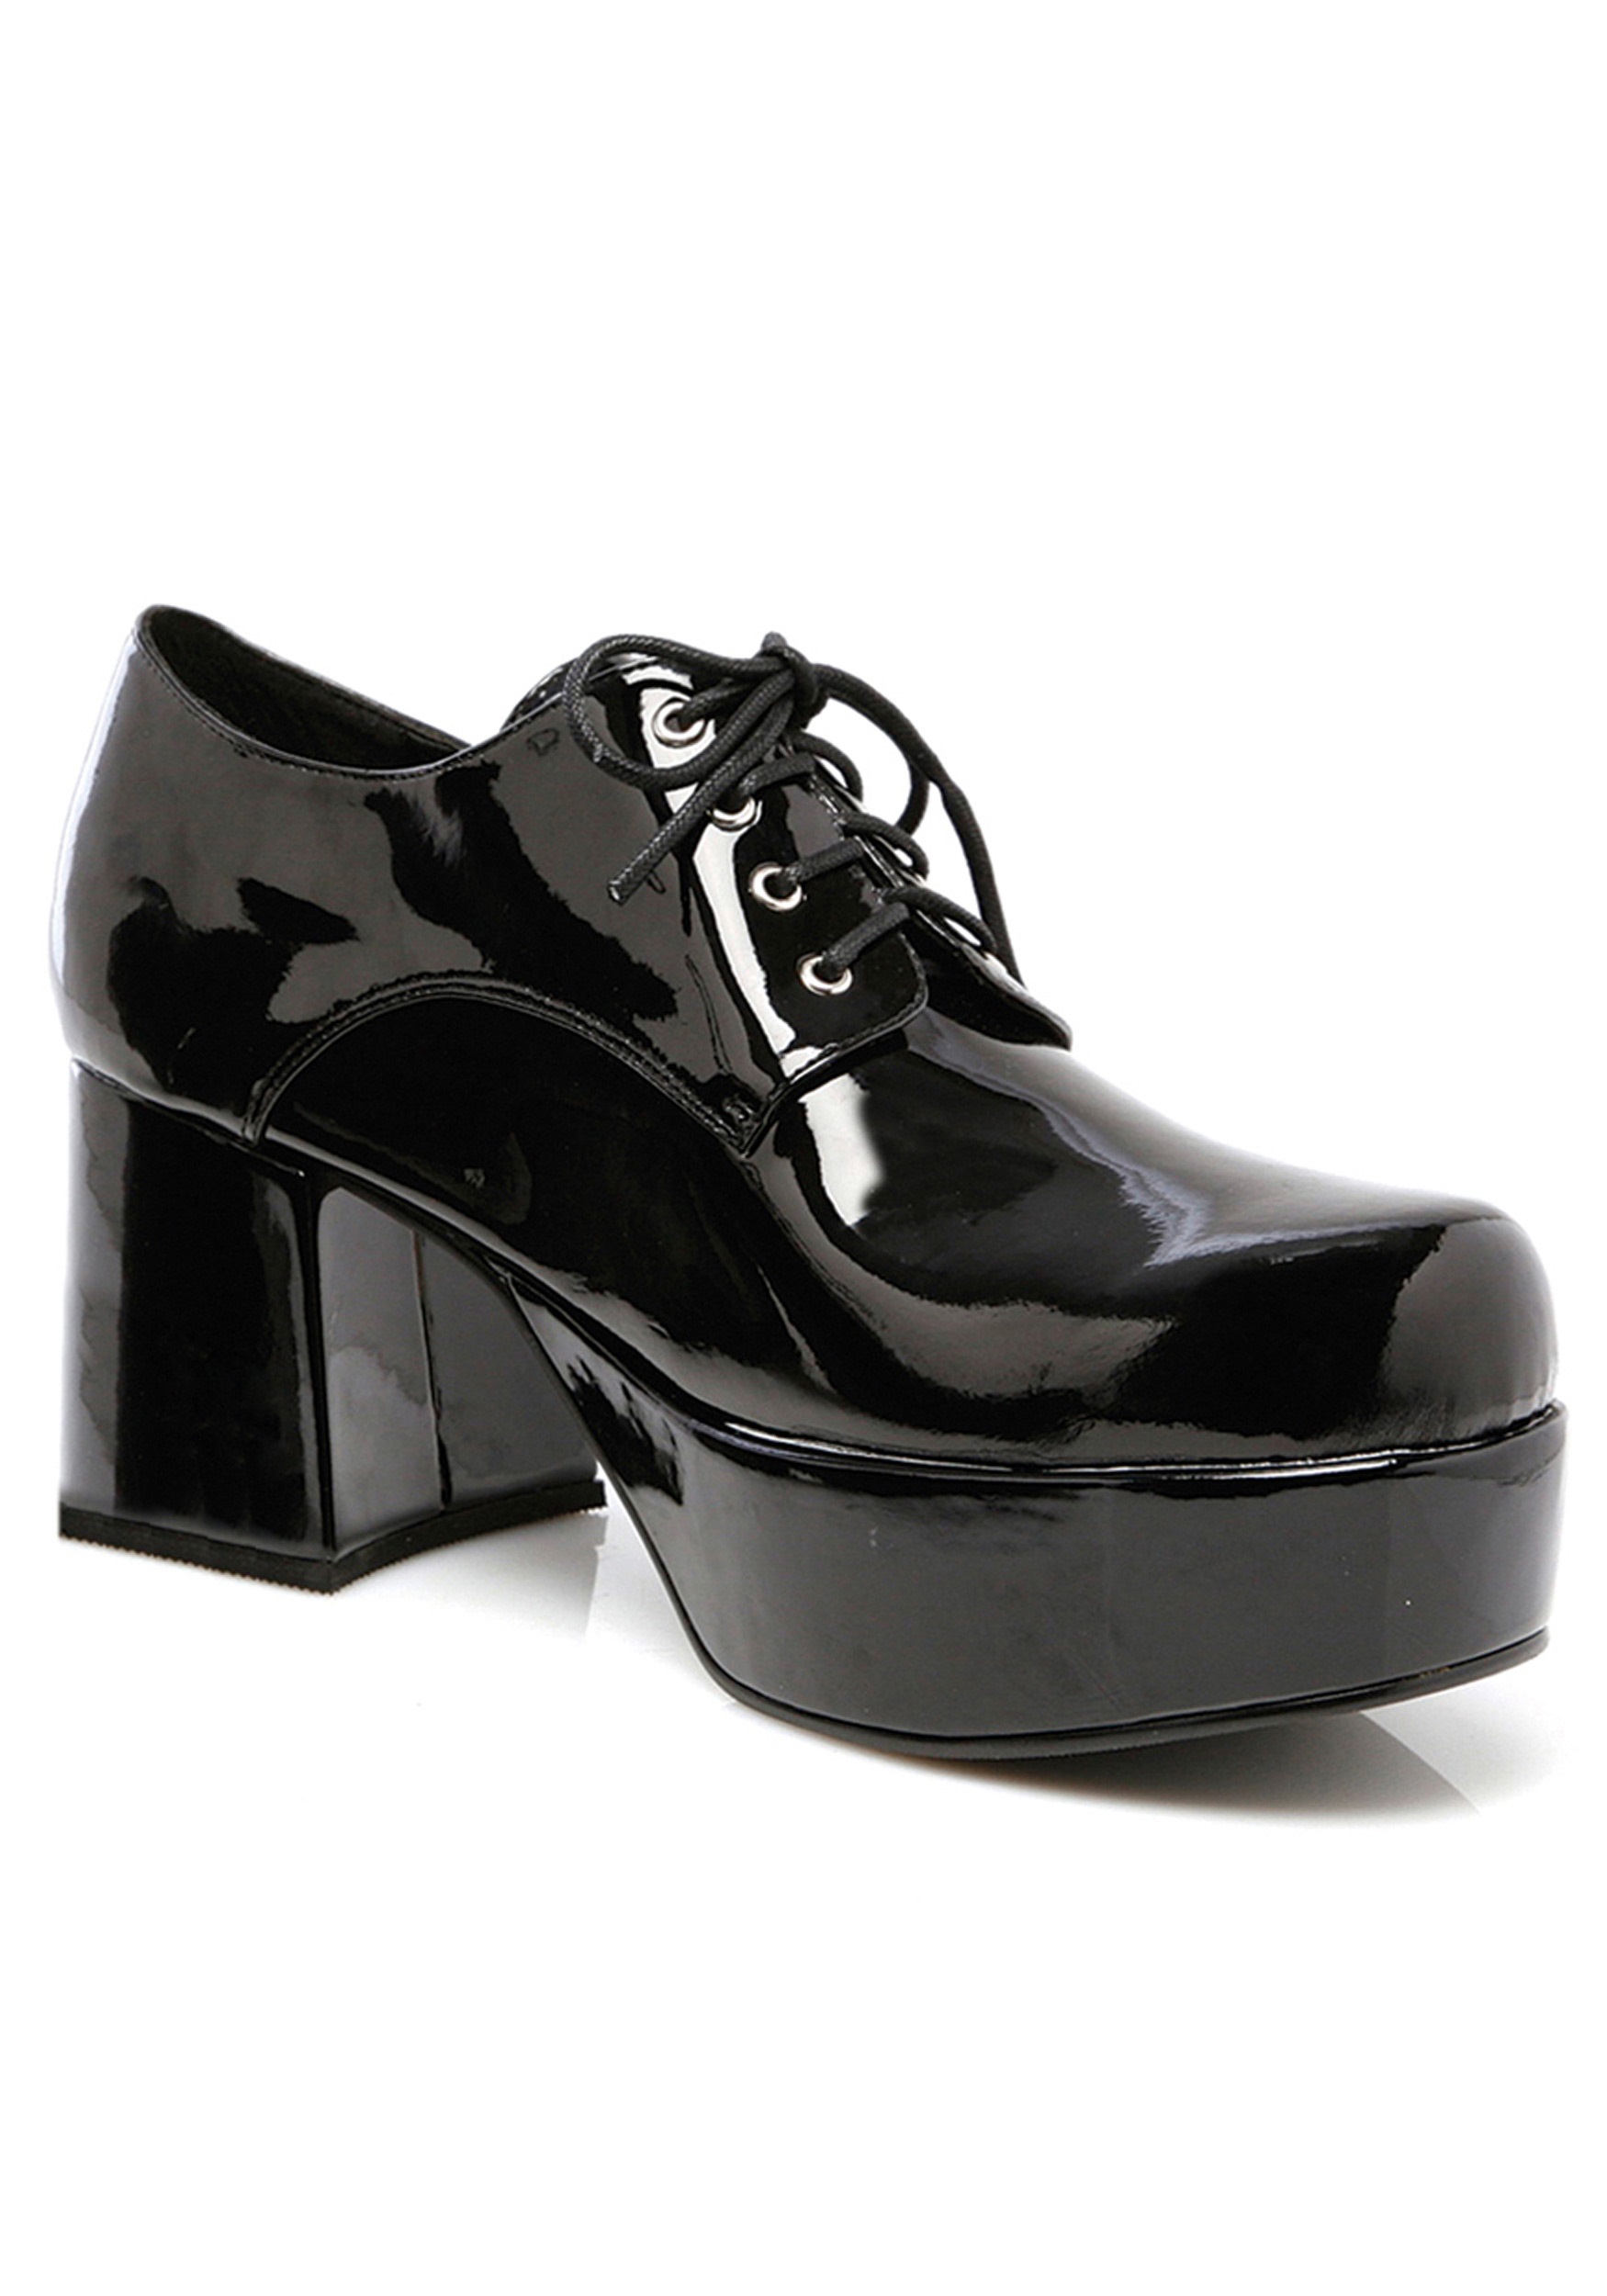 Image of Black Pimp Shoes for Men ID EE312PIMPBK-M